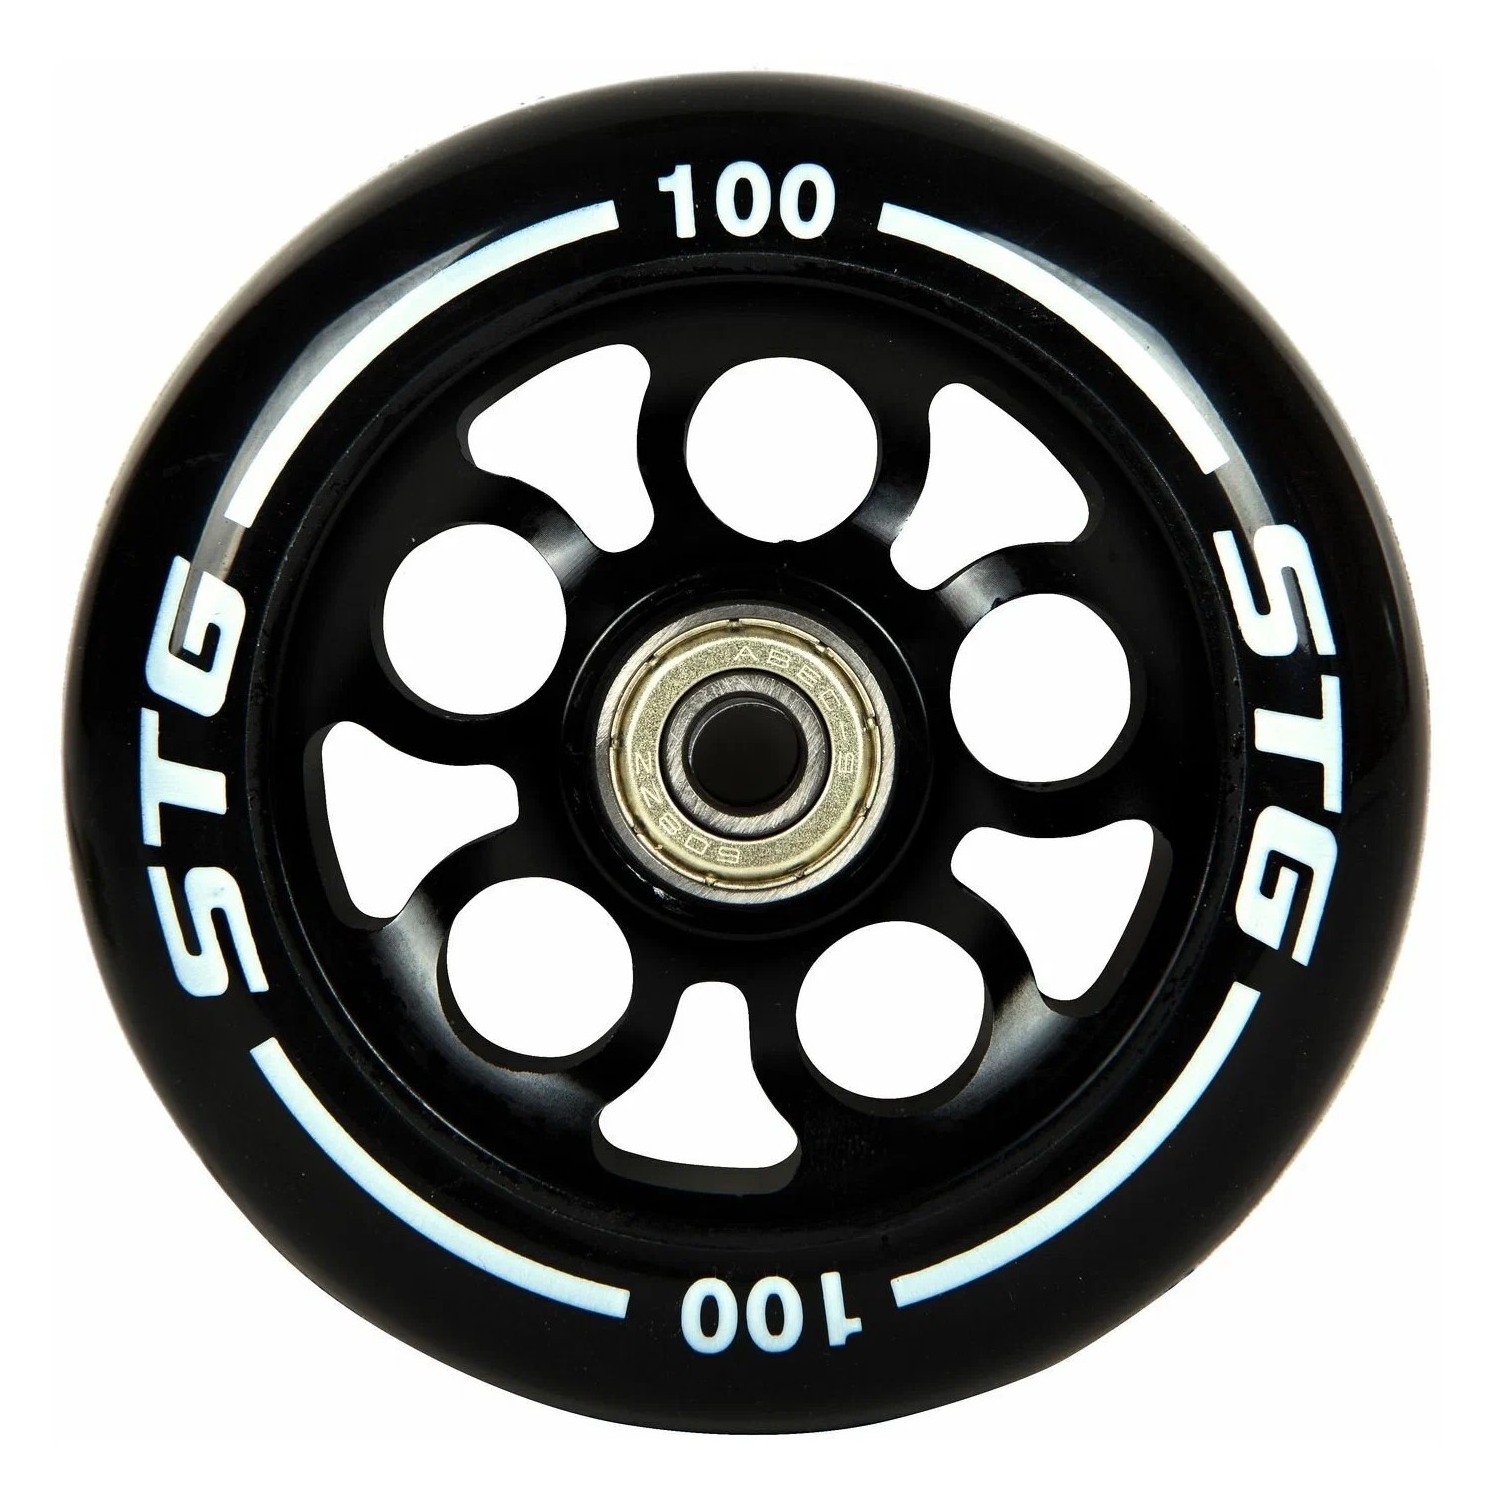 Stinger Колесо STG PU 100mm, для трюковых самокатов (X105164), цвет Черный